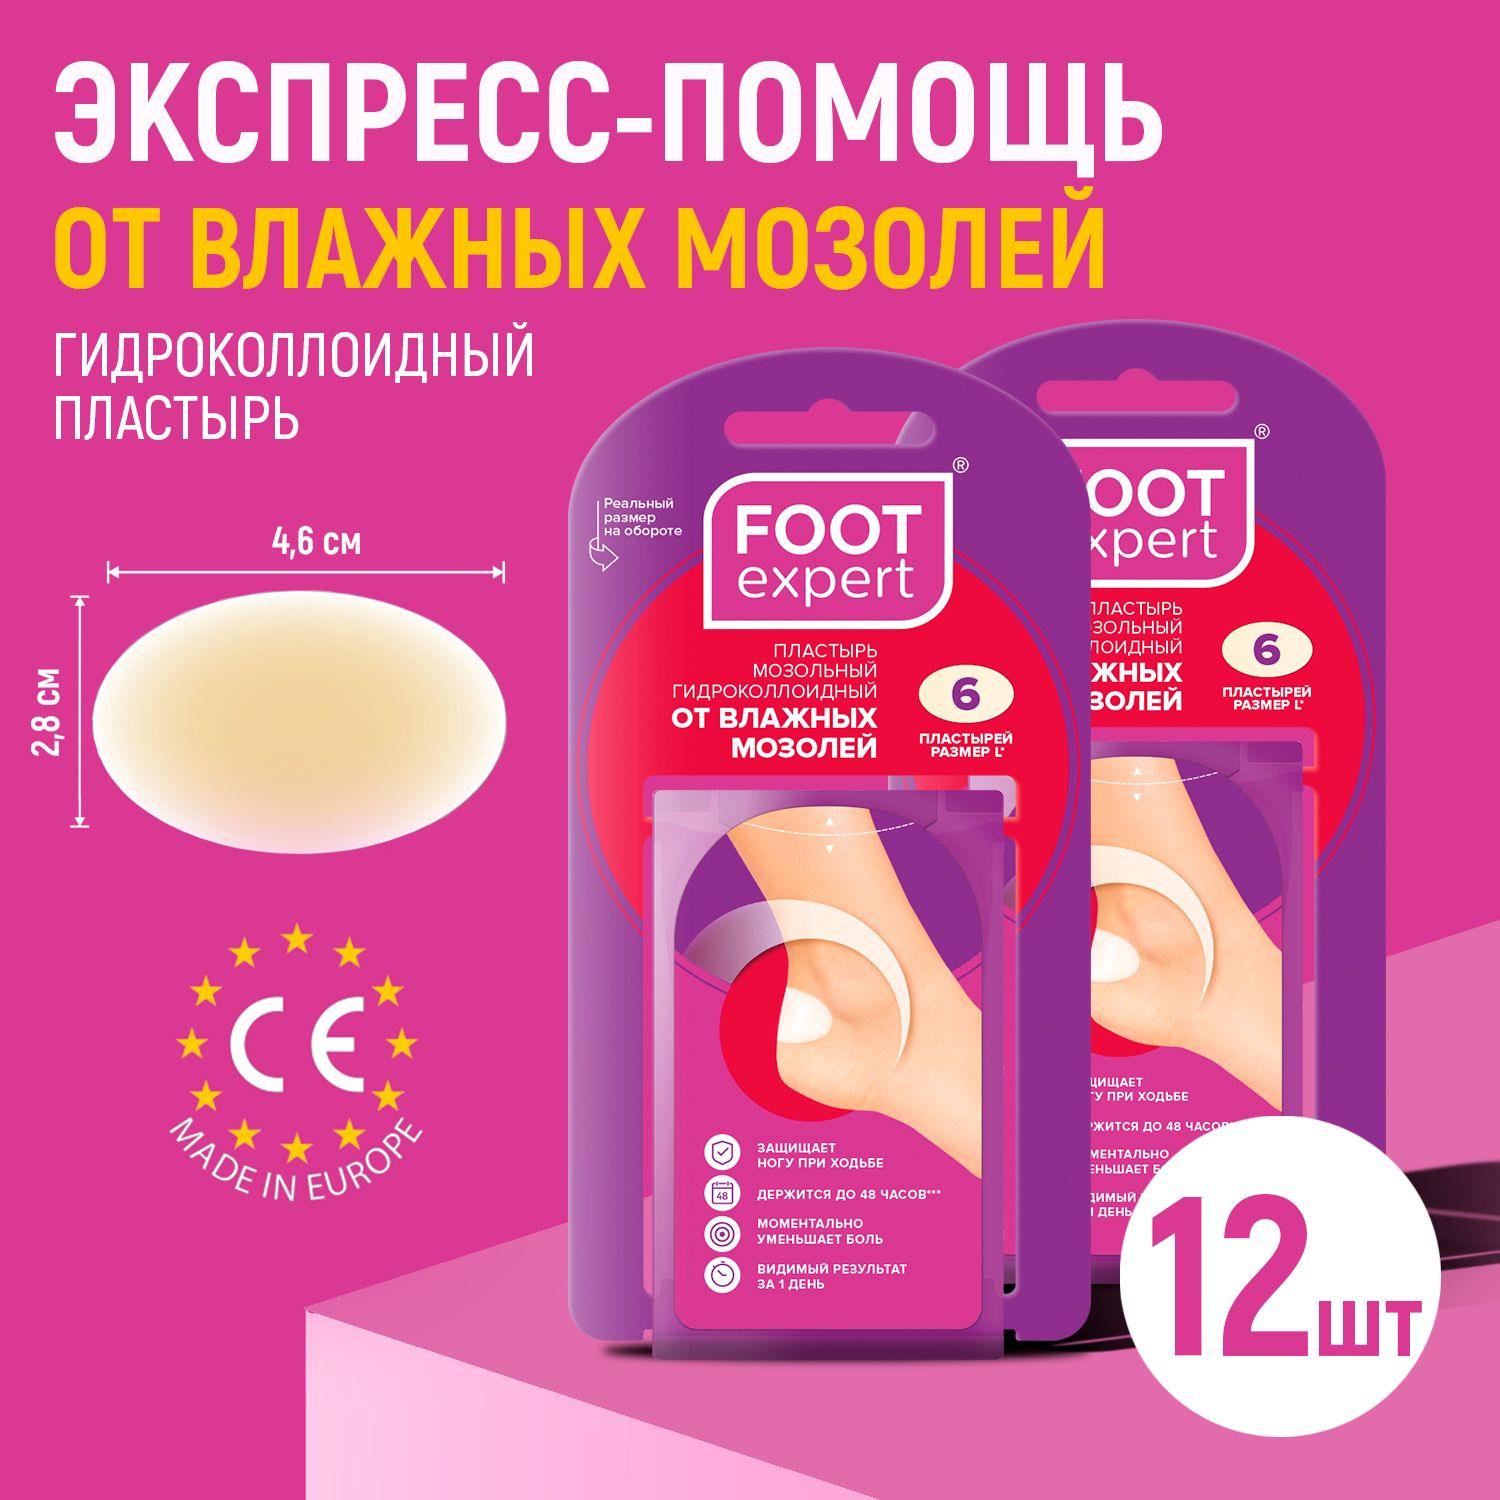 Foot expert | FOOT EXPERT Гидроколлоидный пластырь от влажных мозолей, 2,8х4,6 см, 2 упаковки по 6 шт (12 шт), лейкопластырь мозольный для ног